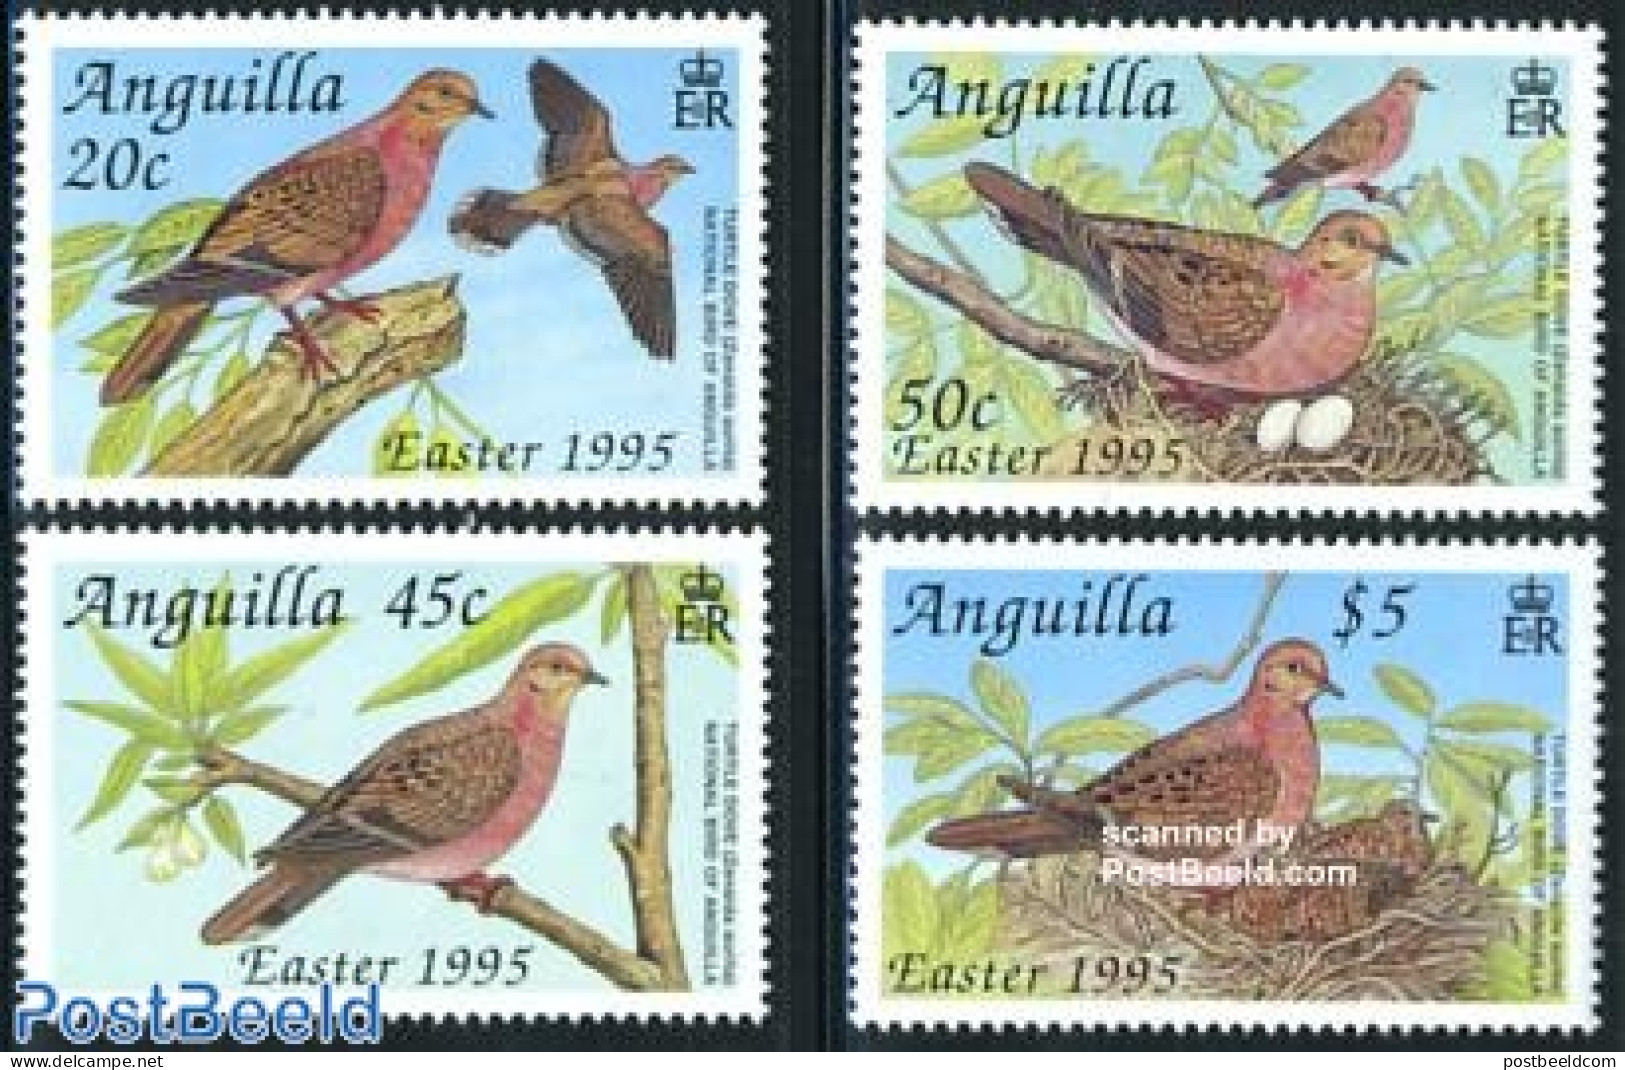 Anguilla 1995 Birds 4v, Mint NH, Nature - Birds - Pigeons - Anguilla (1968-...)